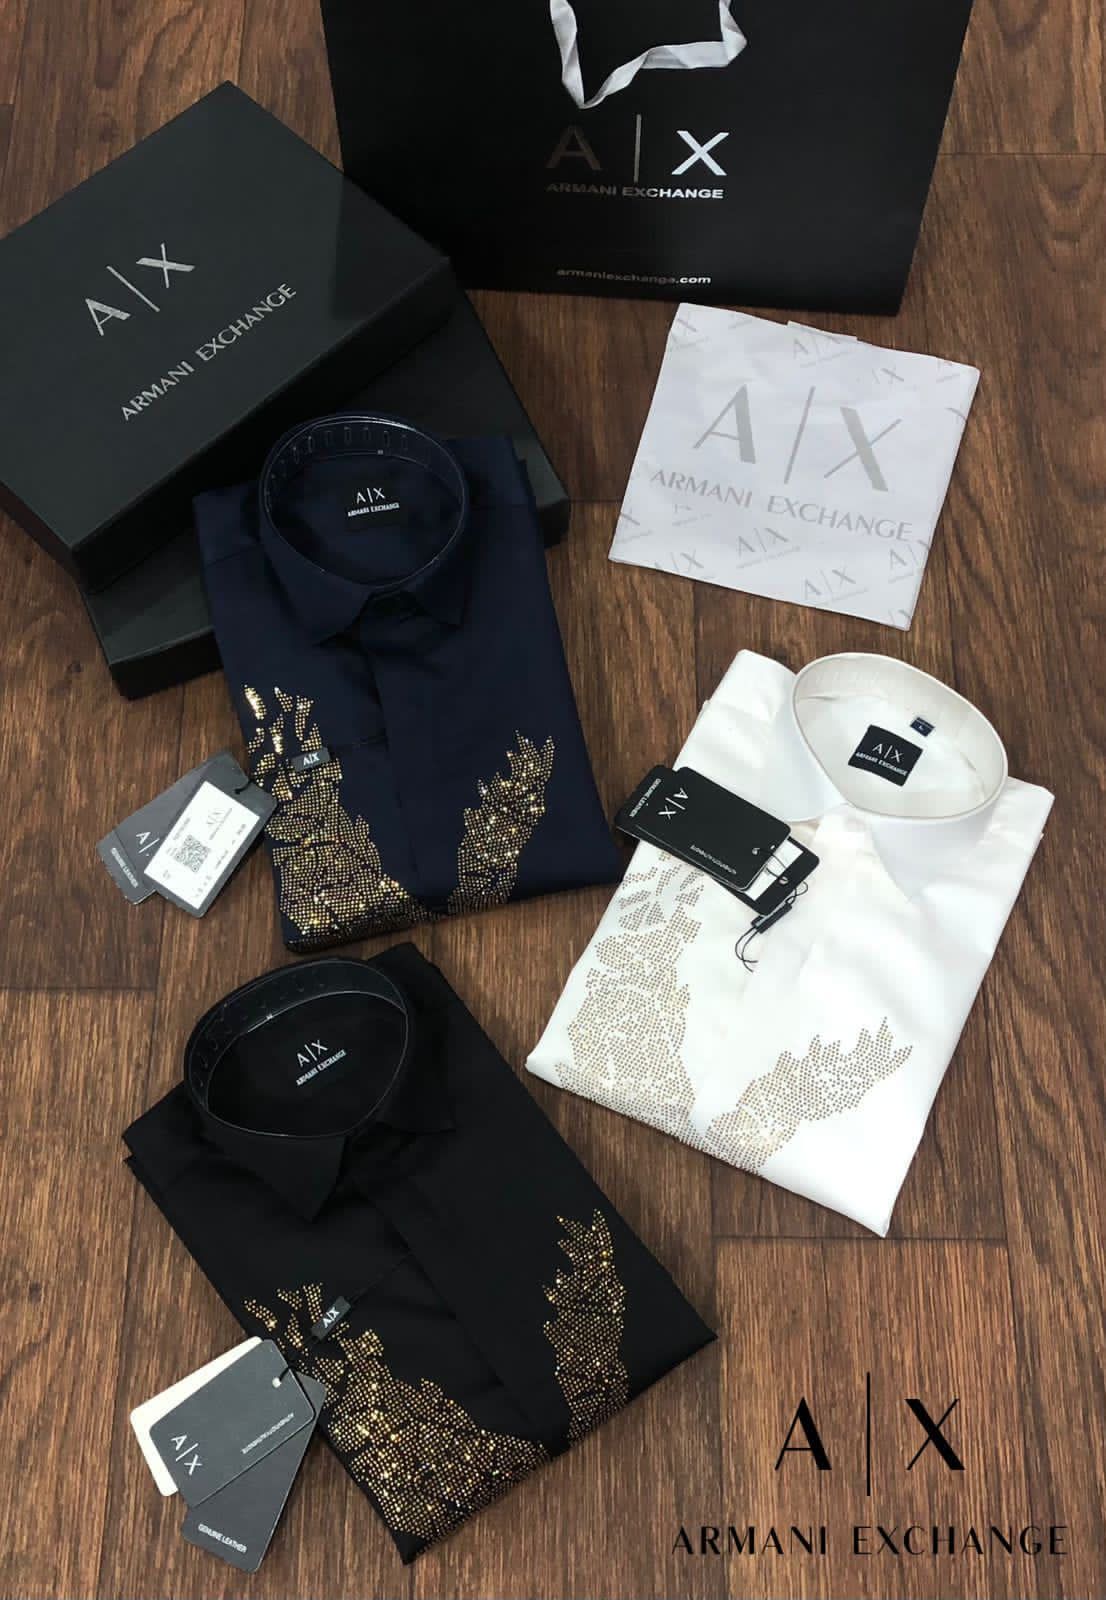 Luxury Printed Full Sleeves Shirt for Men